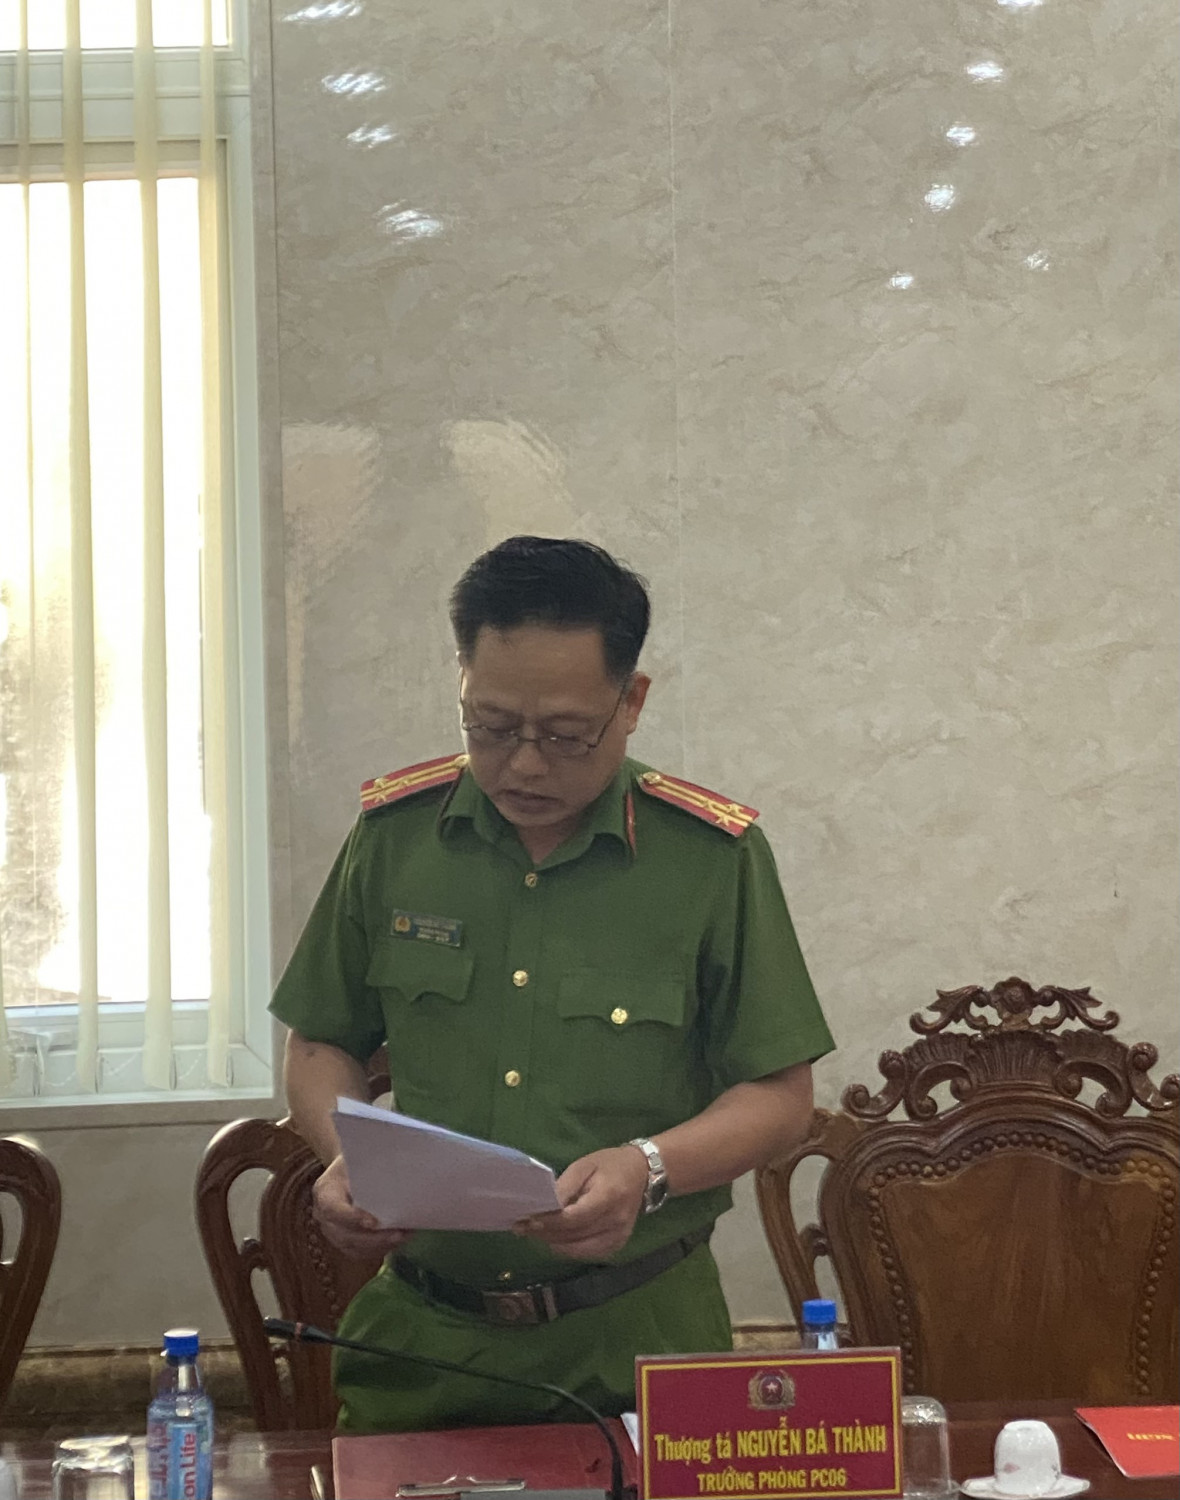 Đồng chí Thượng tá Nguyễn Bá Thành thông qua báo cáo kết quả thực hiện Đề án 06 của Chính phủ trên địa bàn tỉnh 